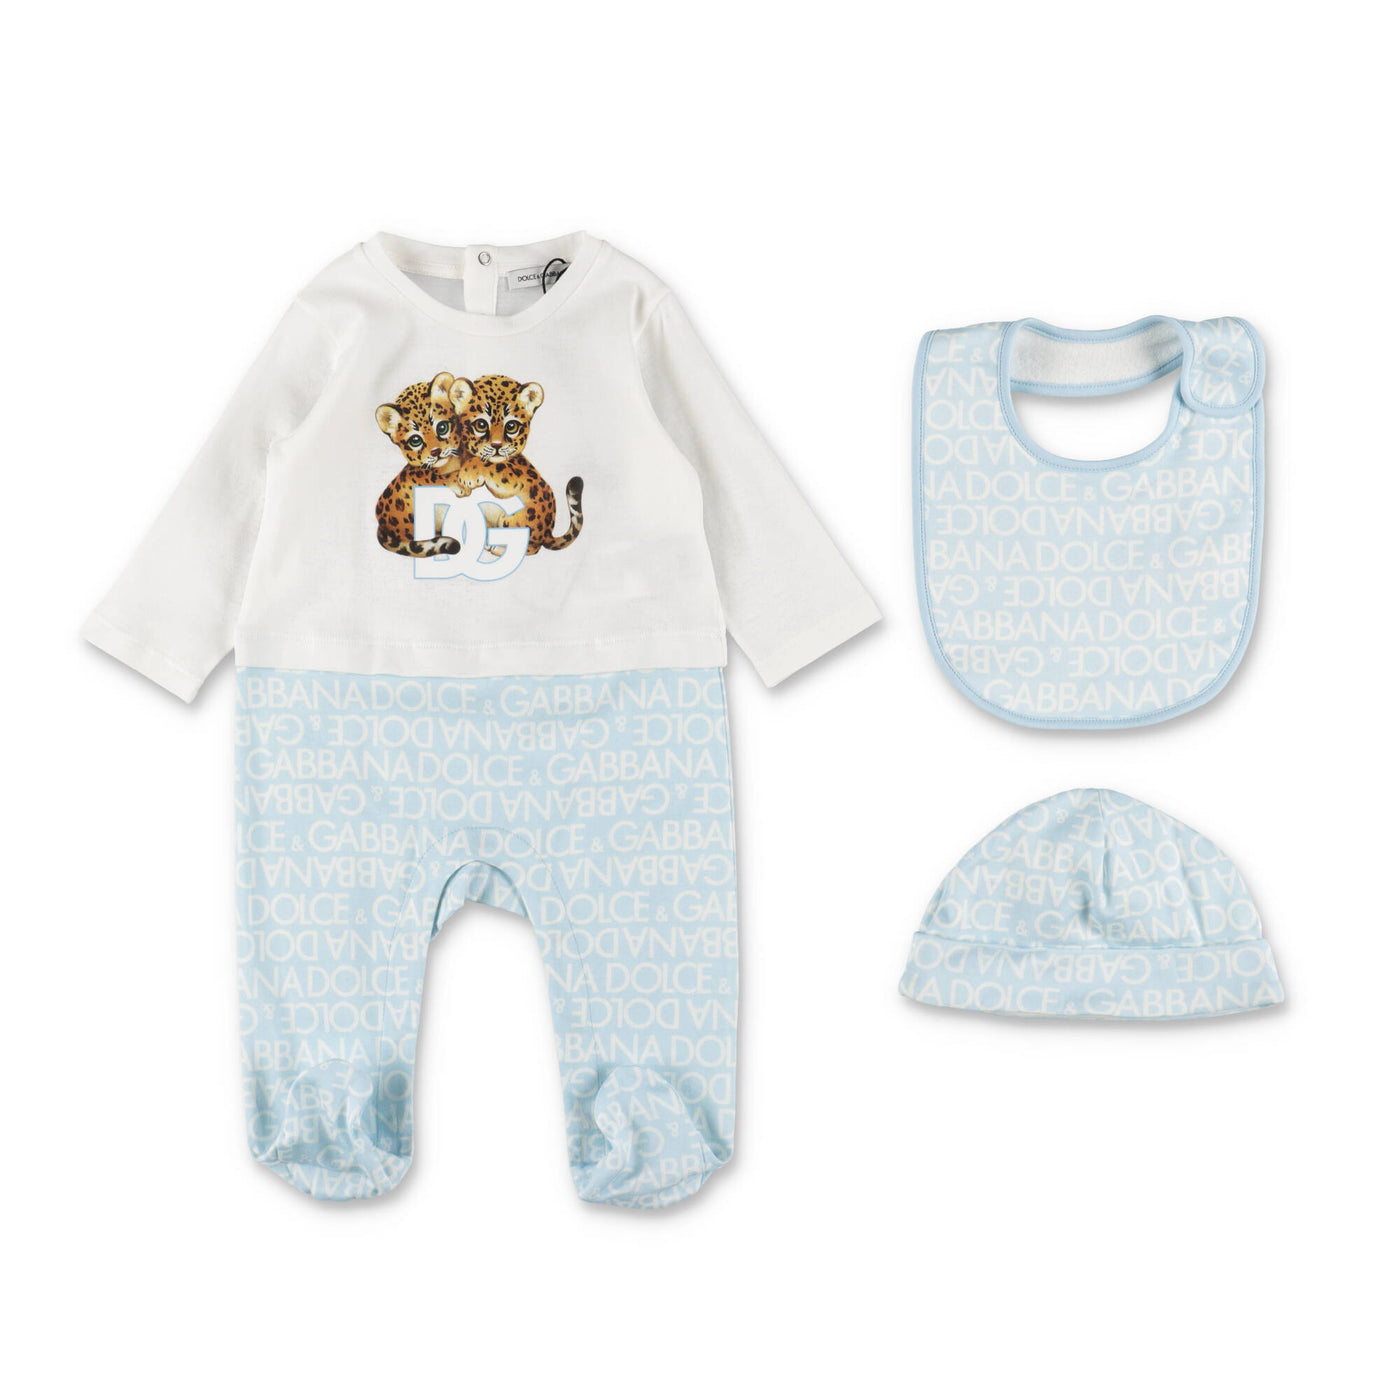 Cotton onesie bib and hat baby boy DOLCE & GABBANA set | Carofiglio Junior